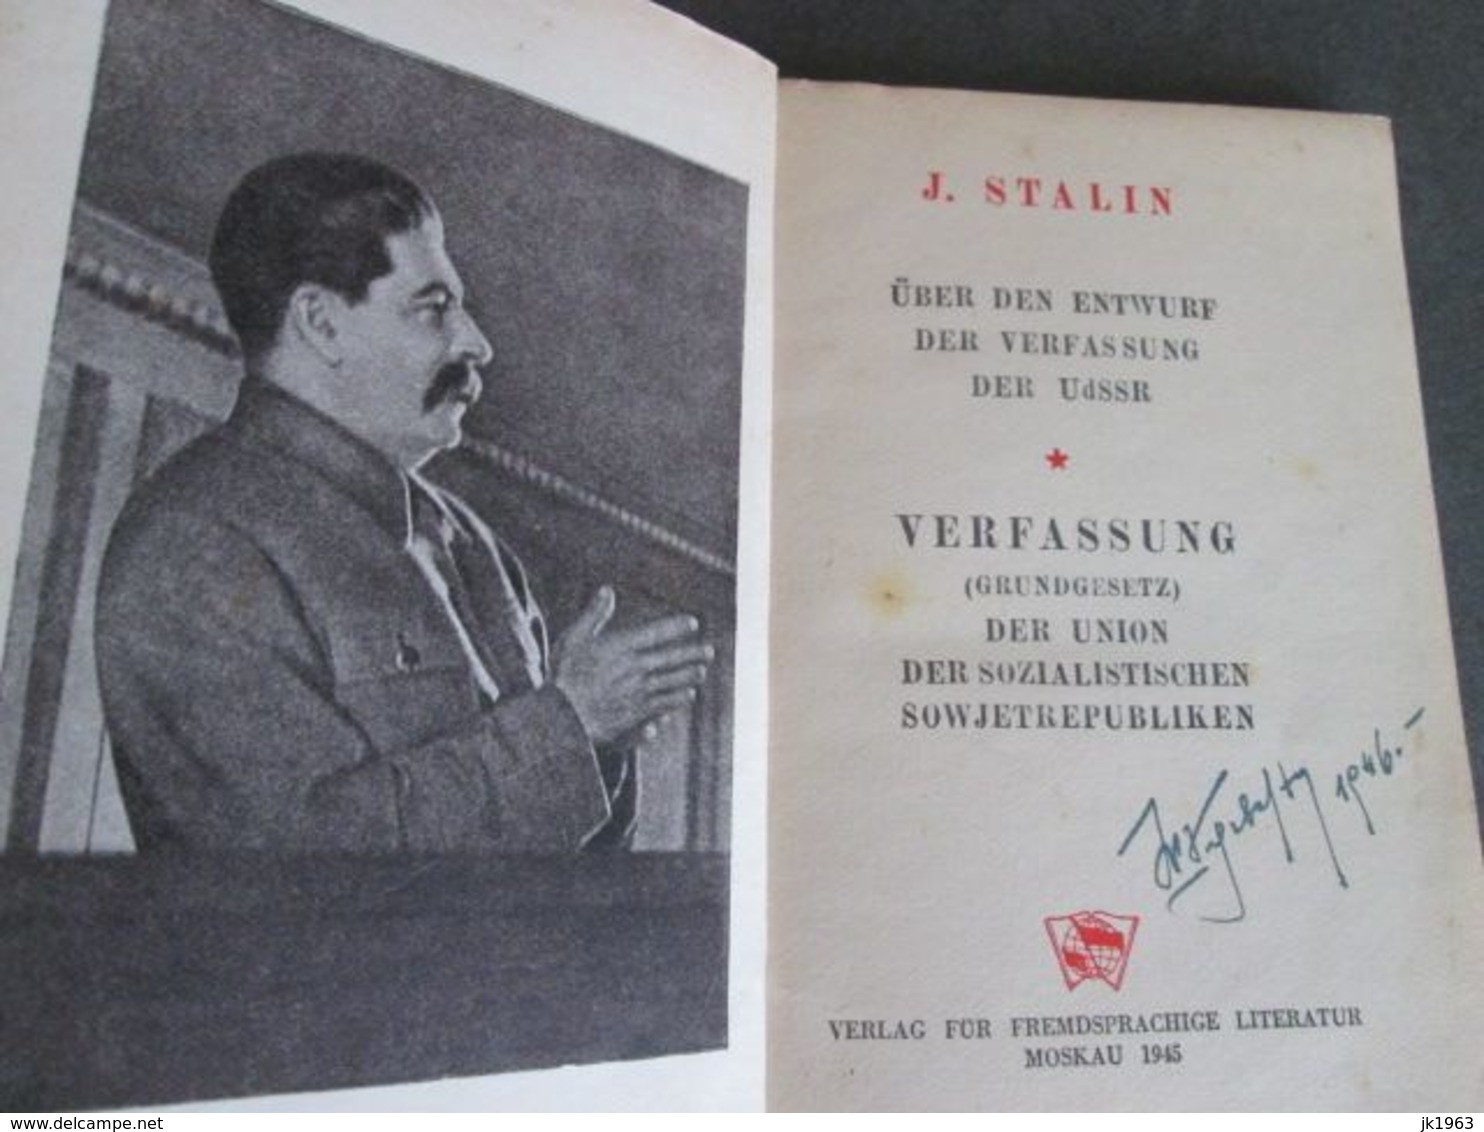 J. STALIN, UBER DEN ENTWURF DER VERFASSUNG DER USSR, MOSKAU 1945 - 5. Zeit Der Weltkriege